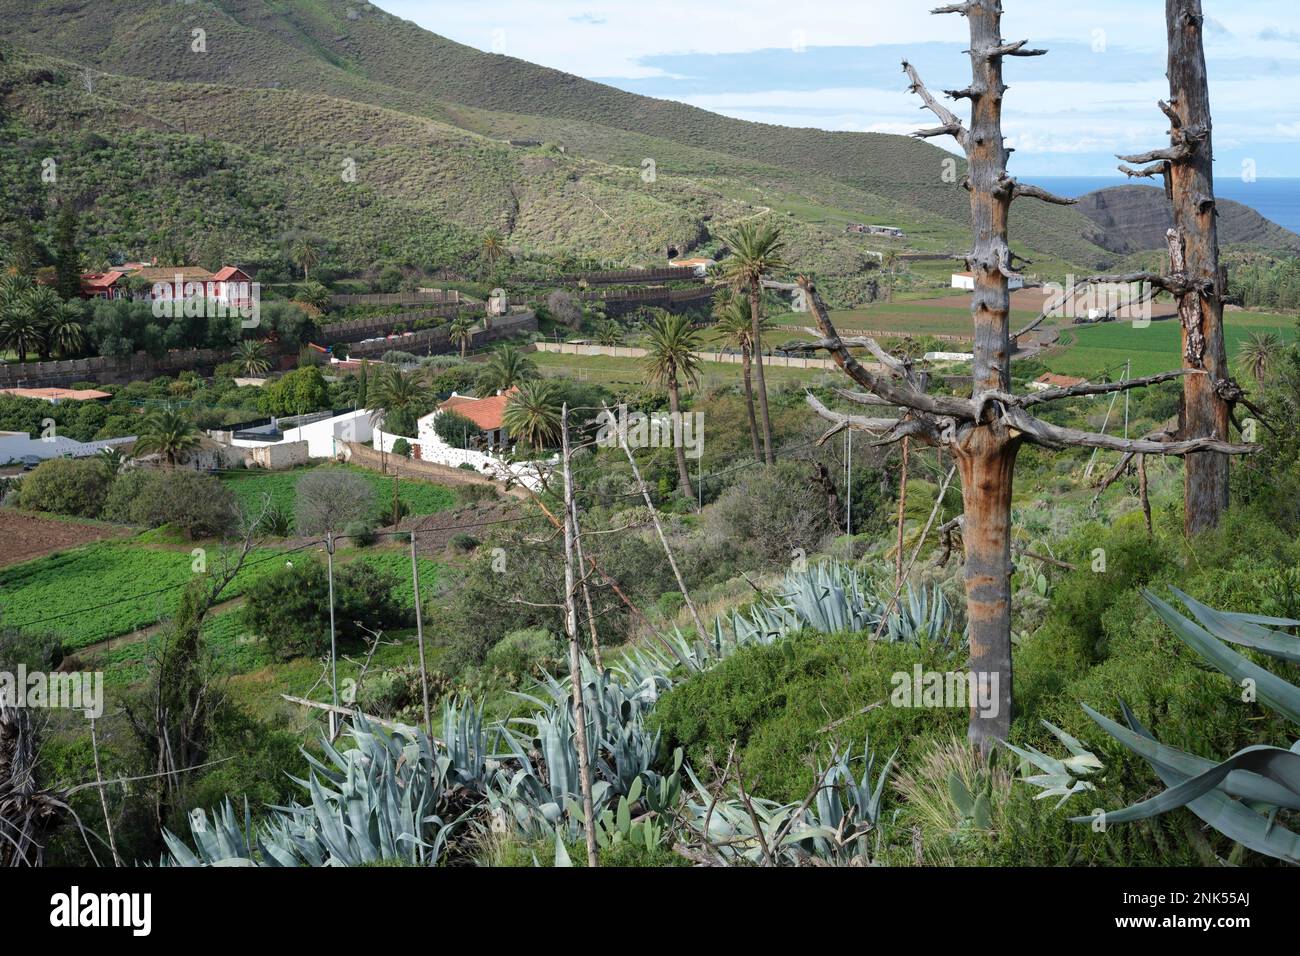 Una valle fruttuosa con fattorie e campi tipici dell'isola di Gran Canaria Foto Stock